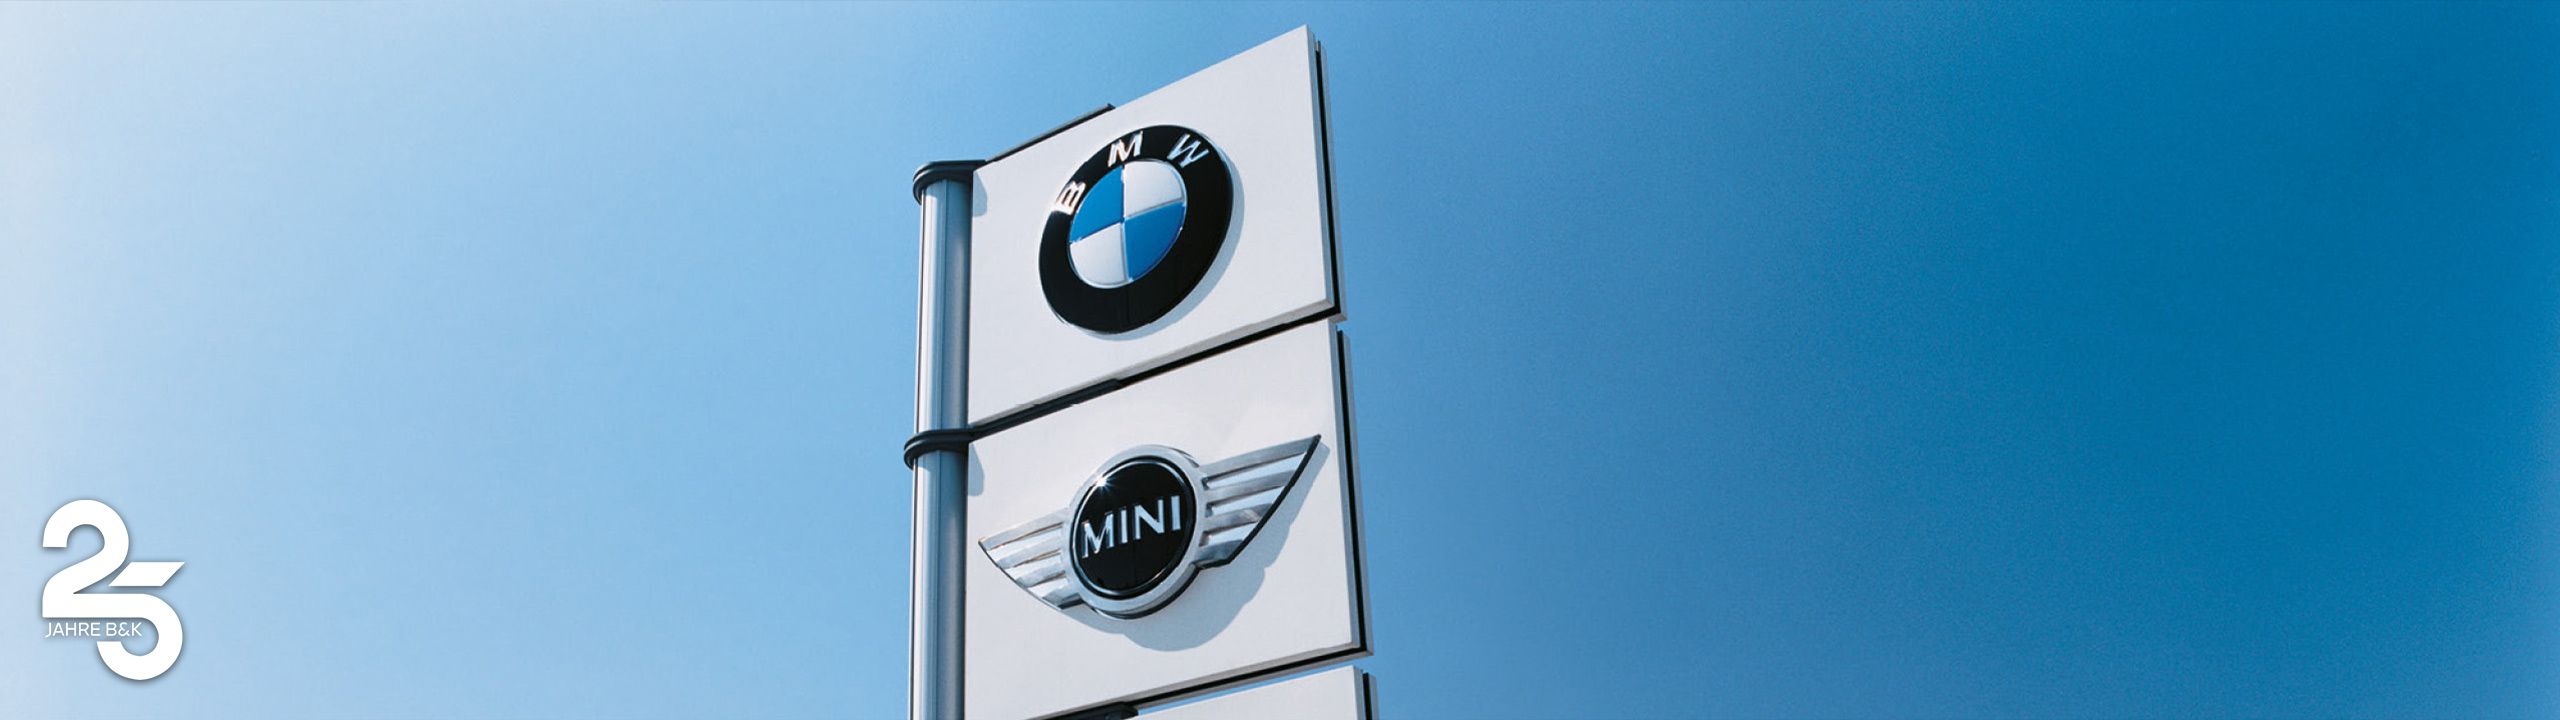 Autohausschild mit den Marken BMW und MINI